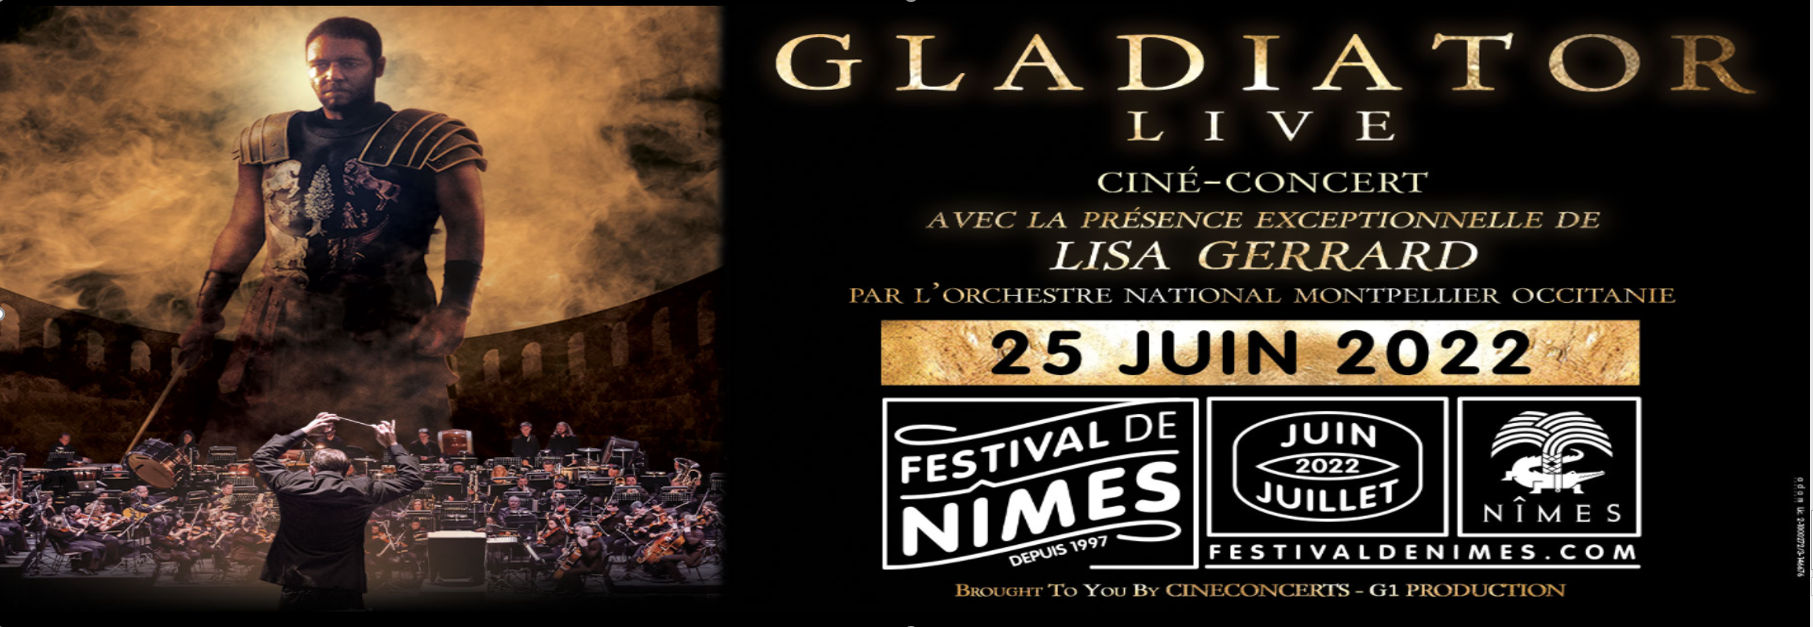 gladiator-live-aux-arenes-le-26-juin-dans-le-cadre-du-festival-de-nimes